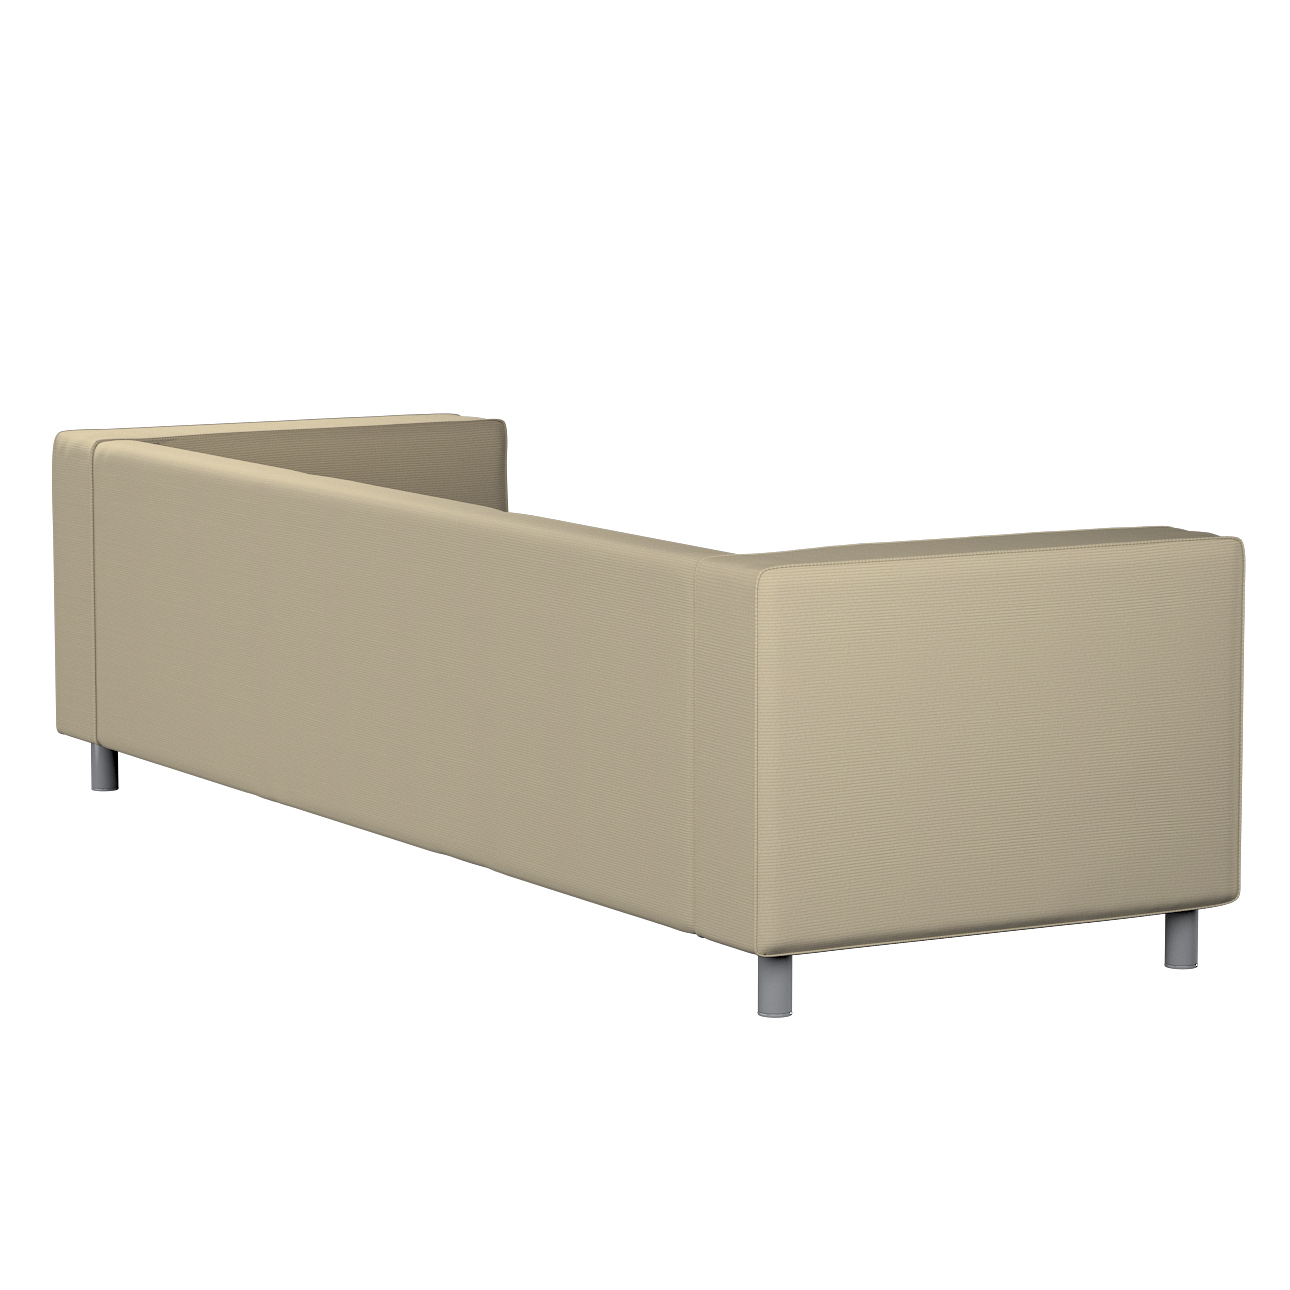 Bezug für Klippan 4-Sitzer Sofa, beige, Bezug für Klippan 4-Sitzer, Manches günstig online kaufen